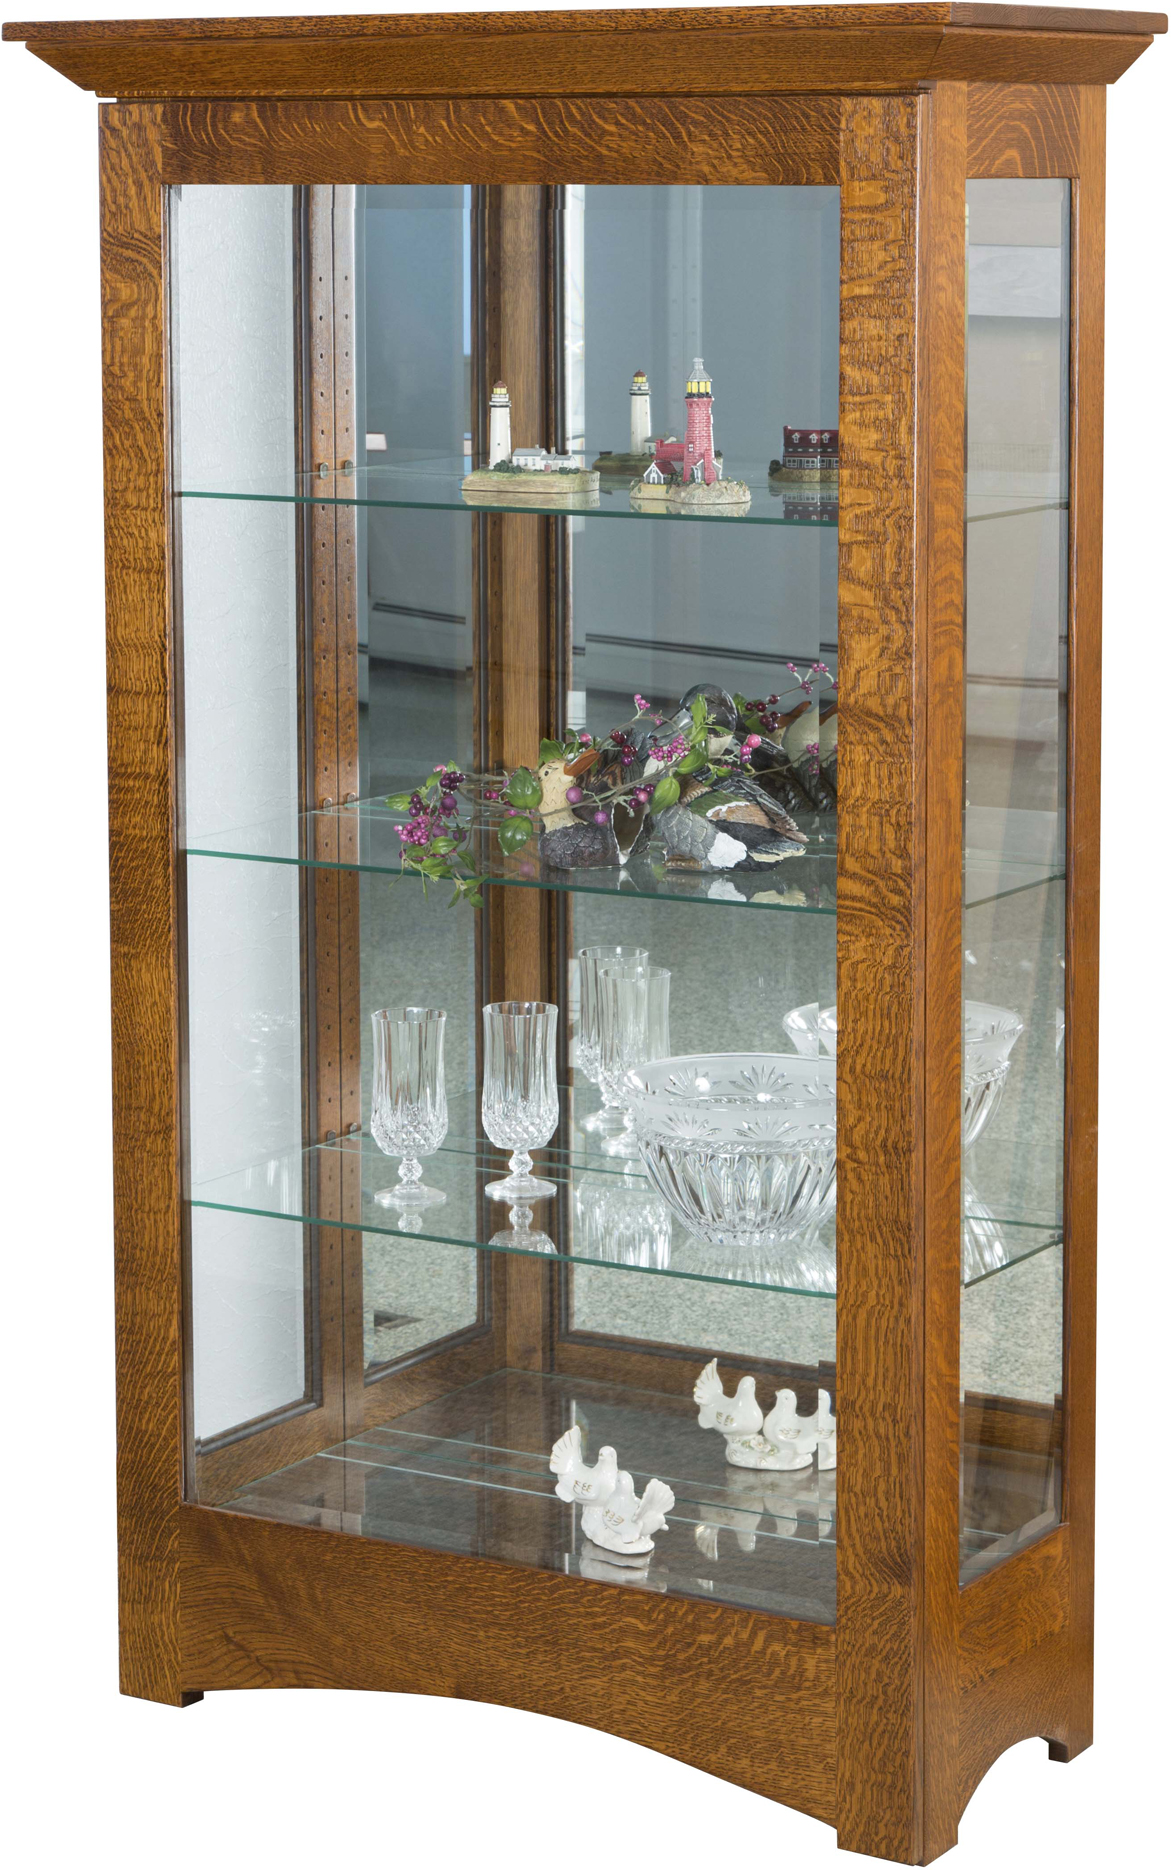 Leda Curio Cabinet Amish Curio Cabinet Solid Wood Curio Cabinet